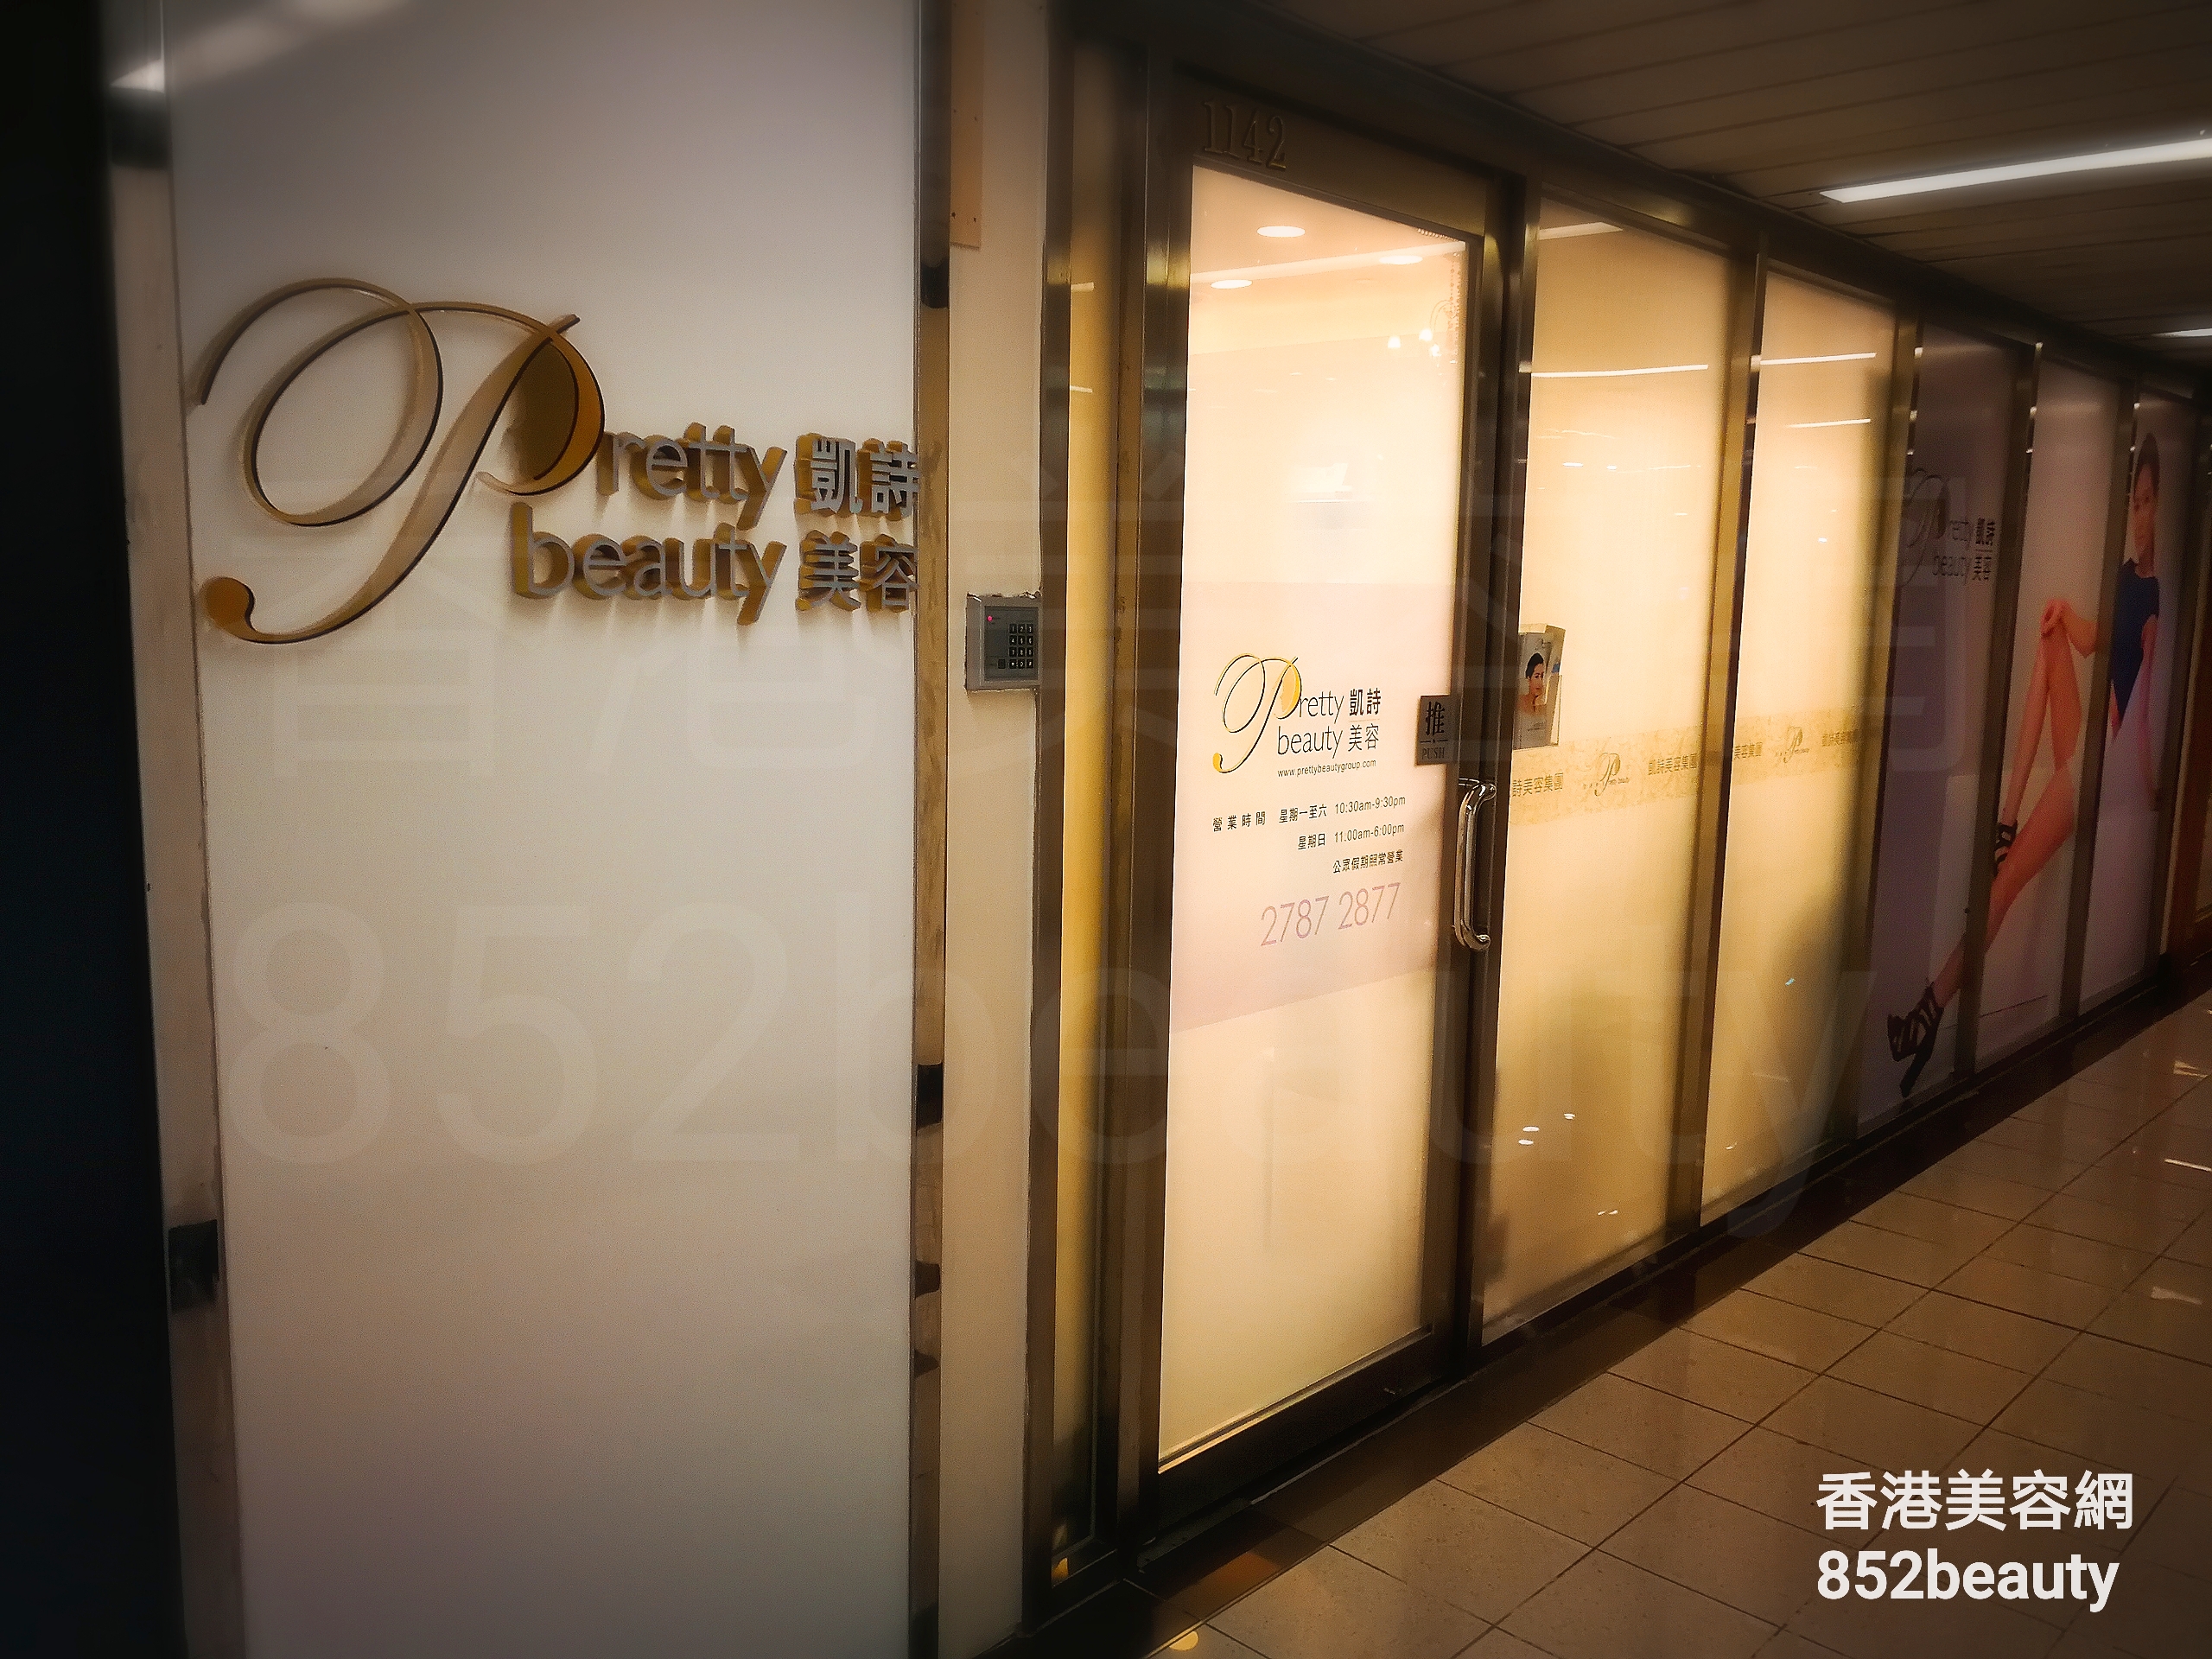 香港美容網 Hong Kong Beauty Salon 美容院 / 美容師: Pretty beauty 凱詩美容 (荃灣一店)